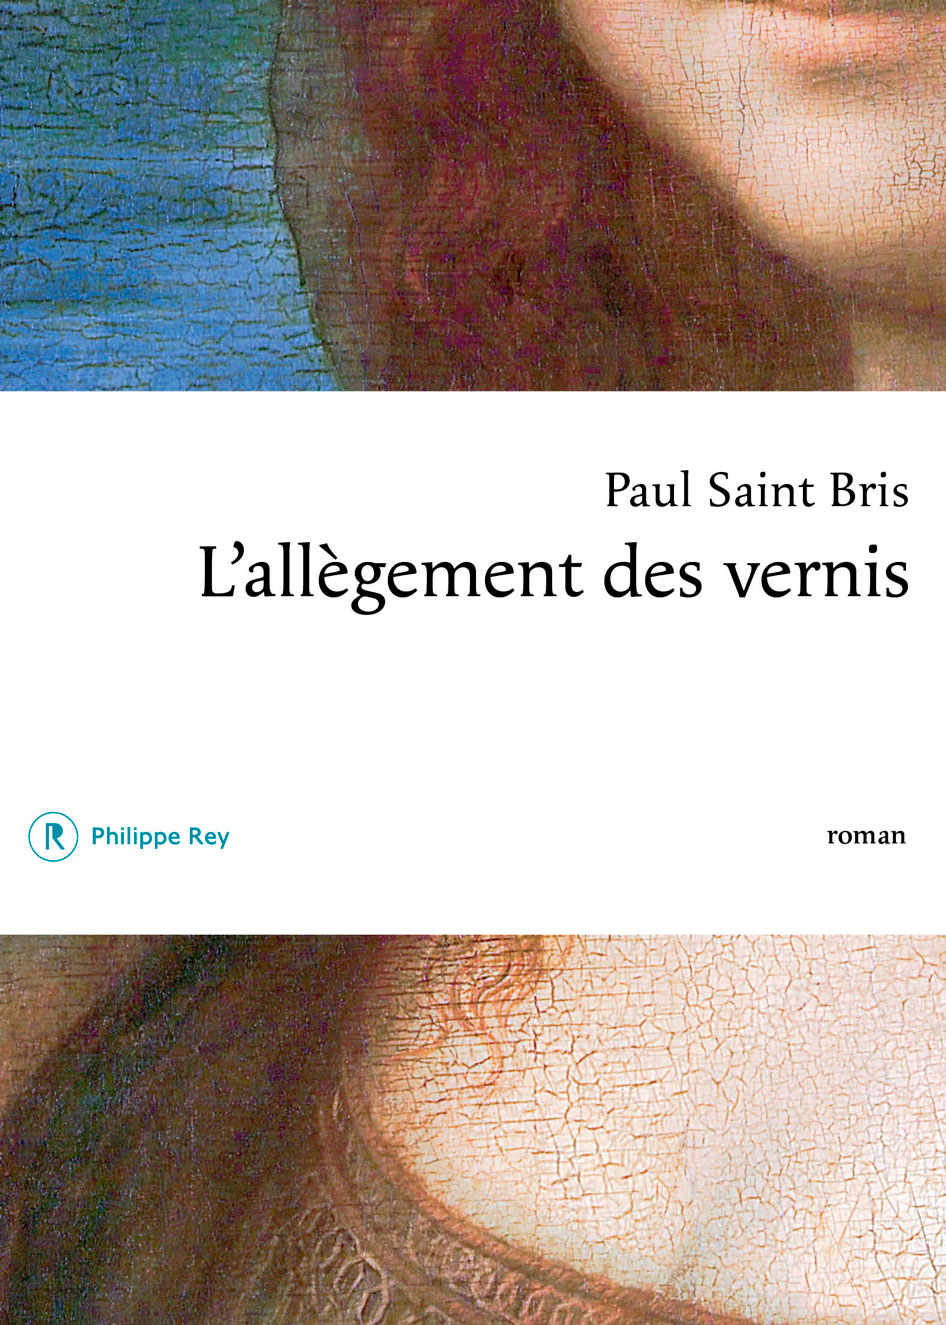 Livre de Paul Saint Bris.